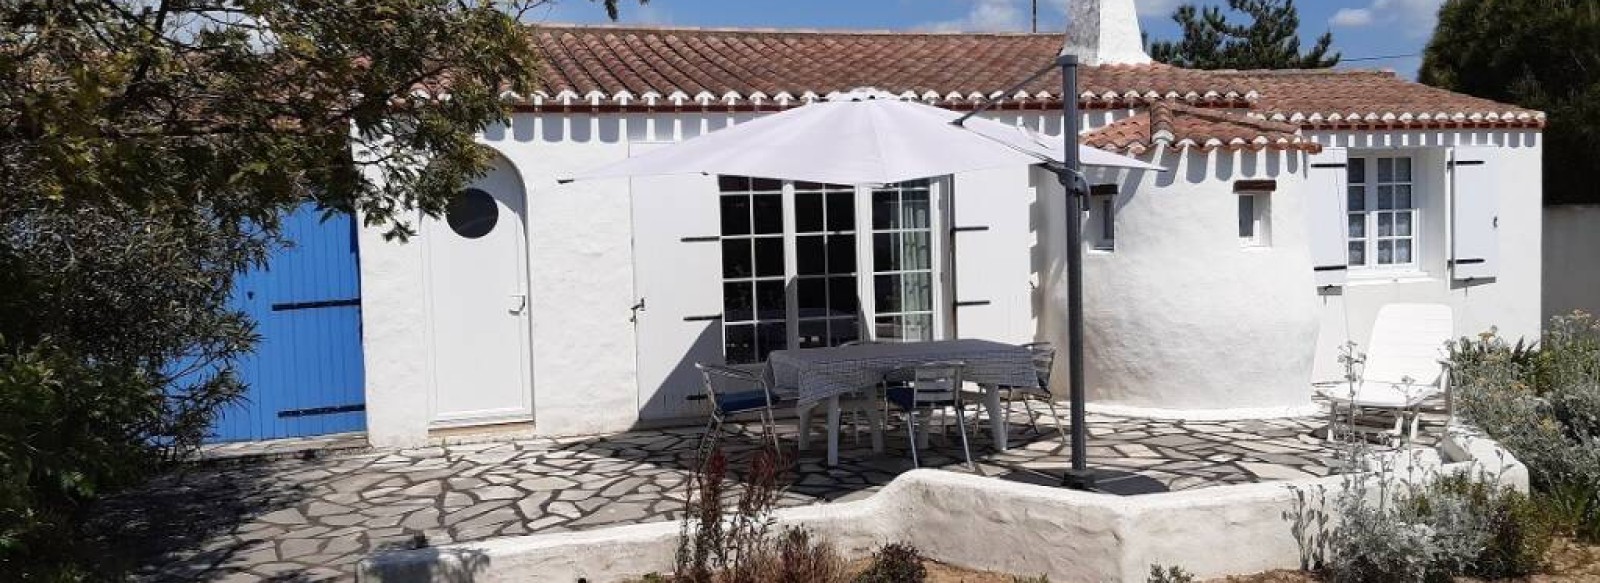 Maison de vacances a 350m de la plage du Midi a Barbatre sur l'Ile de Noirmoutier